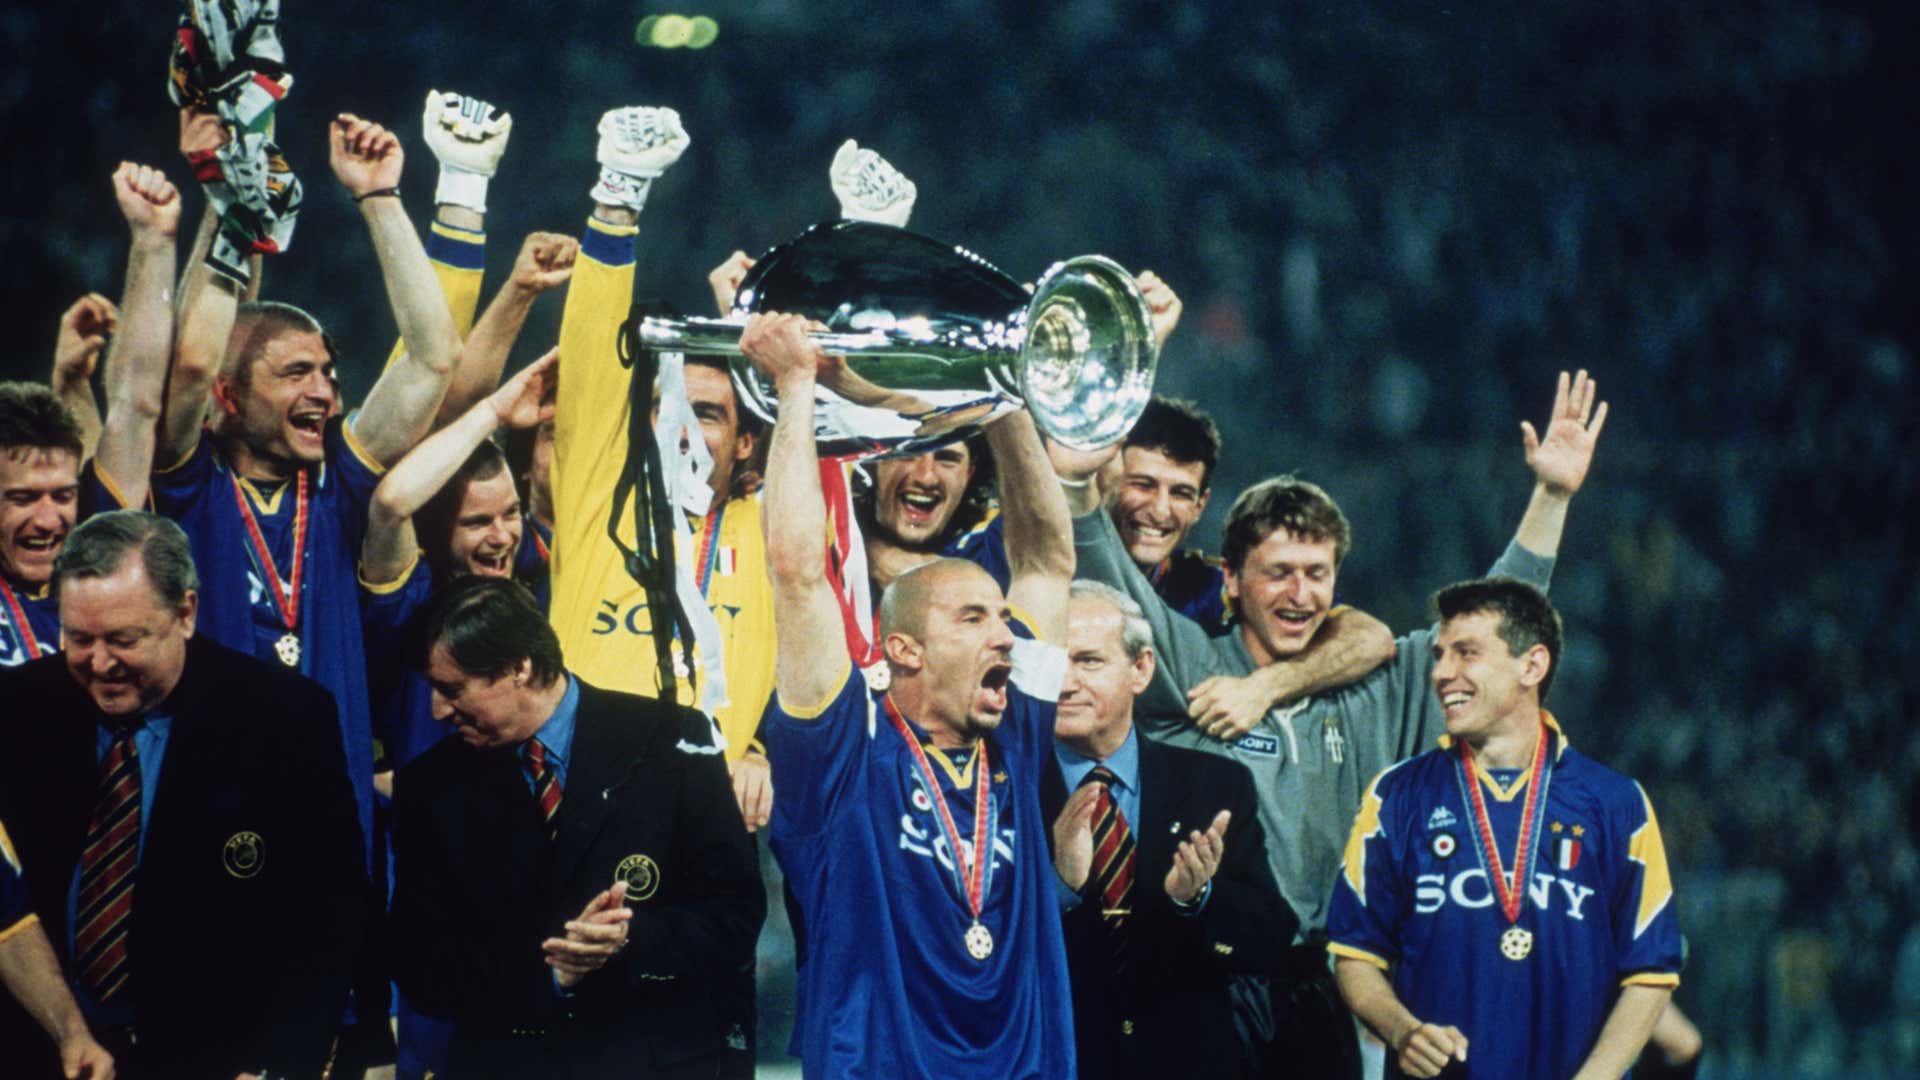 จ้าวยุโรป! ยูเวนตุสชุดแชมป์ UCL 1995/96 ตอนนี้อยู่ที่ไหน? | Goal.com